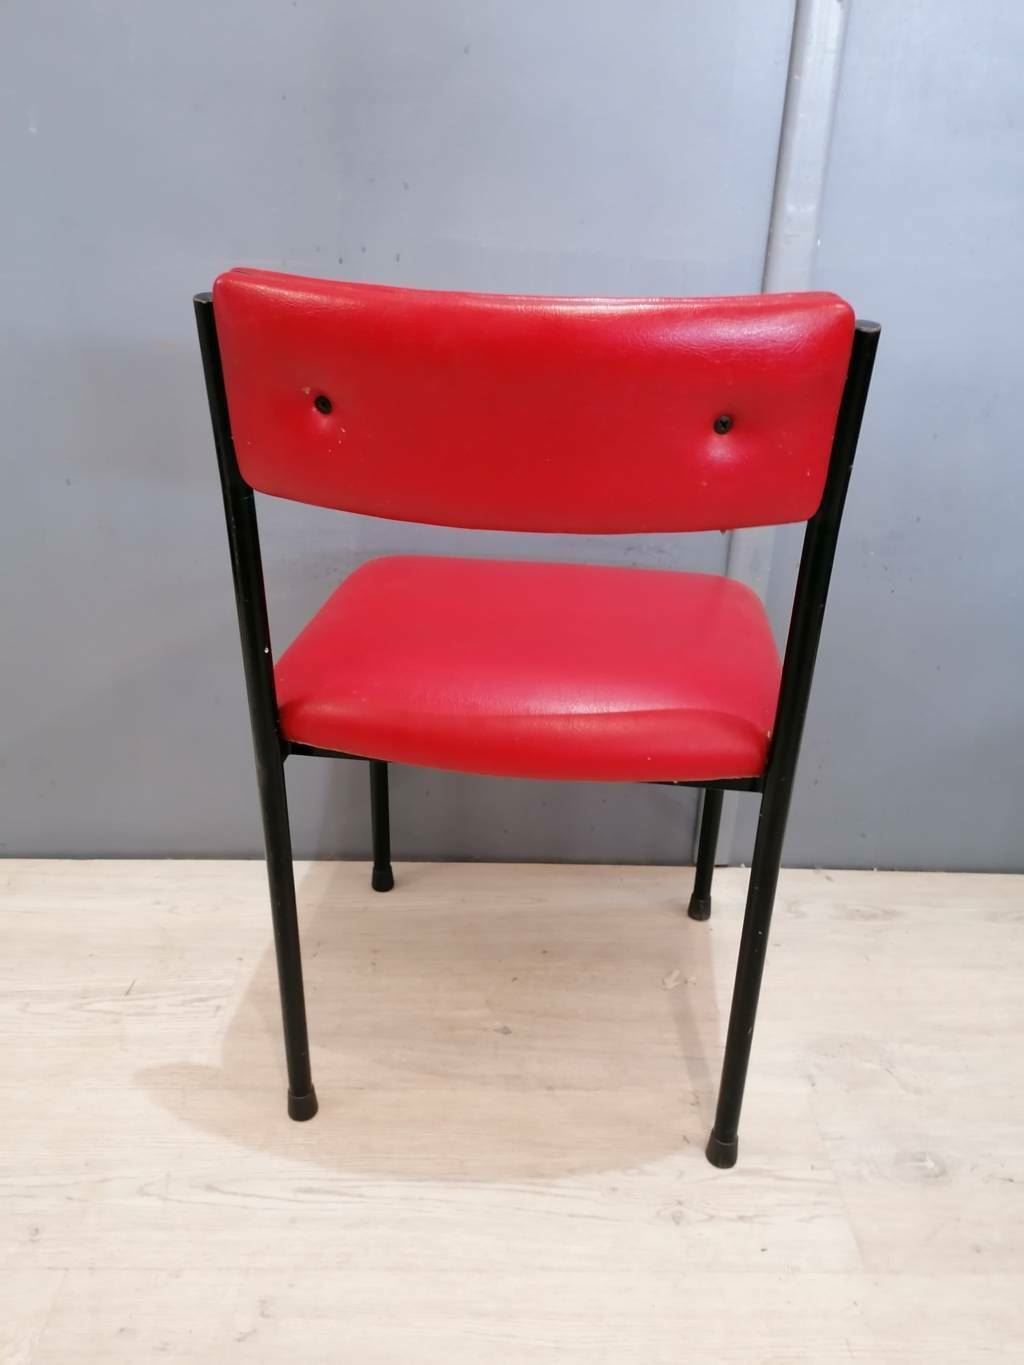 42333 Set n 4 sedie con seduta rossa